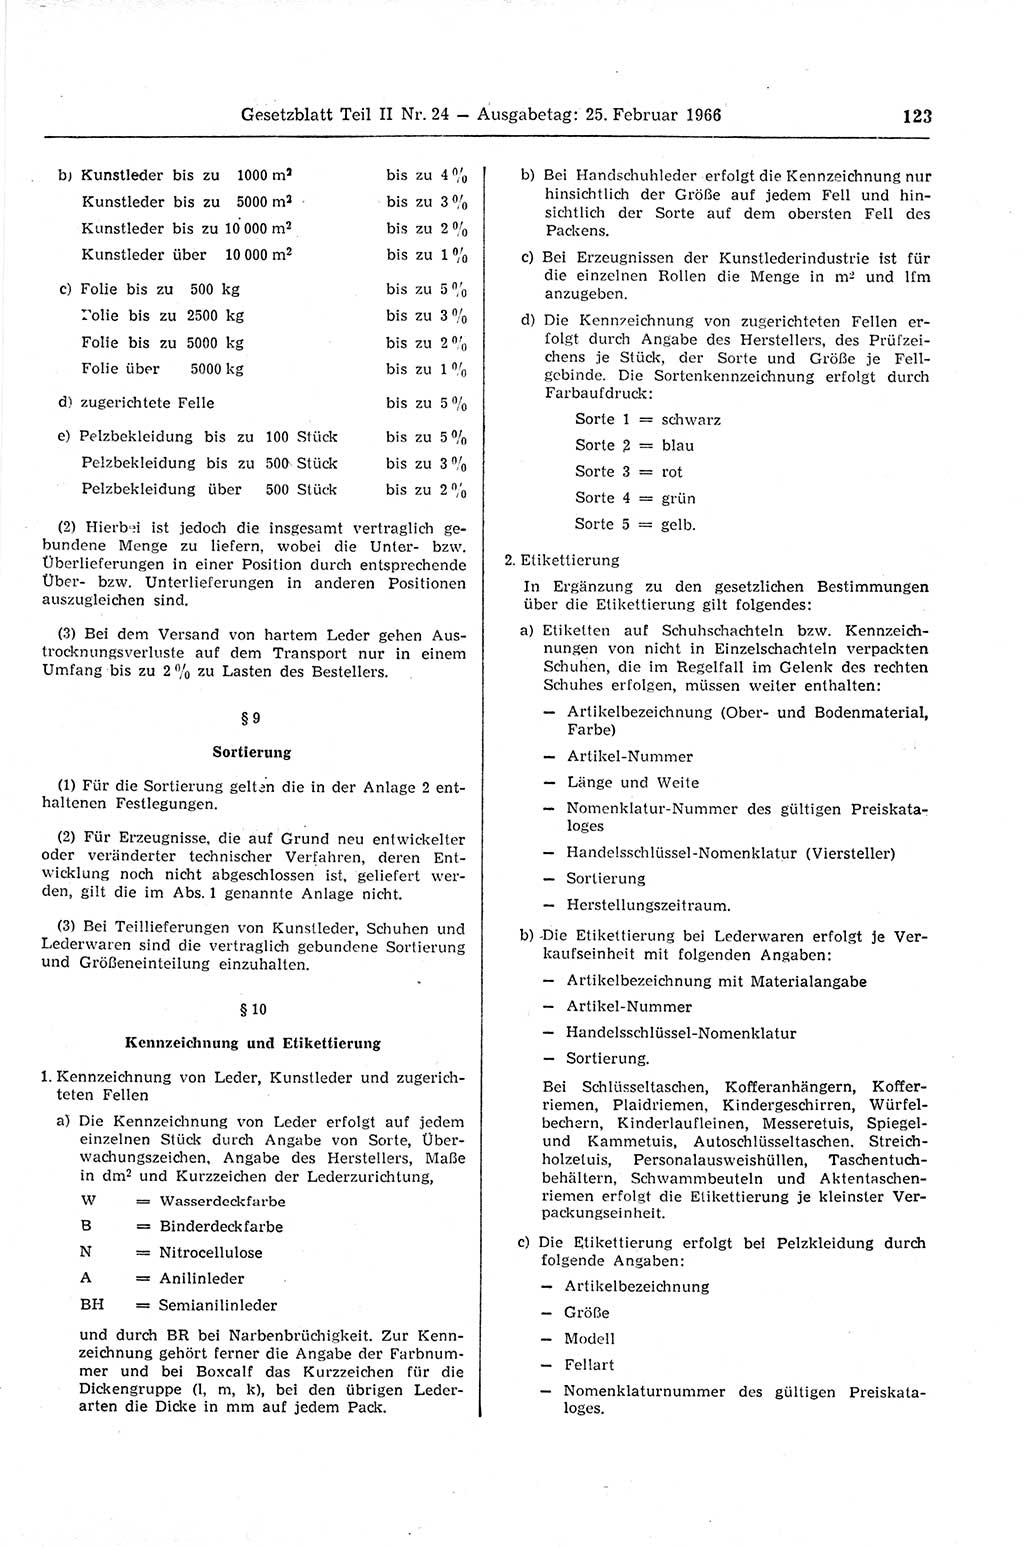 Gesetzblatt (GBl.) der Deutschen Demokratischen Republik (DDR) Teil ⅠⅠ 1966, Seite 123 (GBl. DDR ⅠⅠ 1966, S. 123)